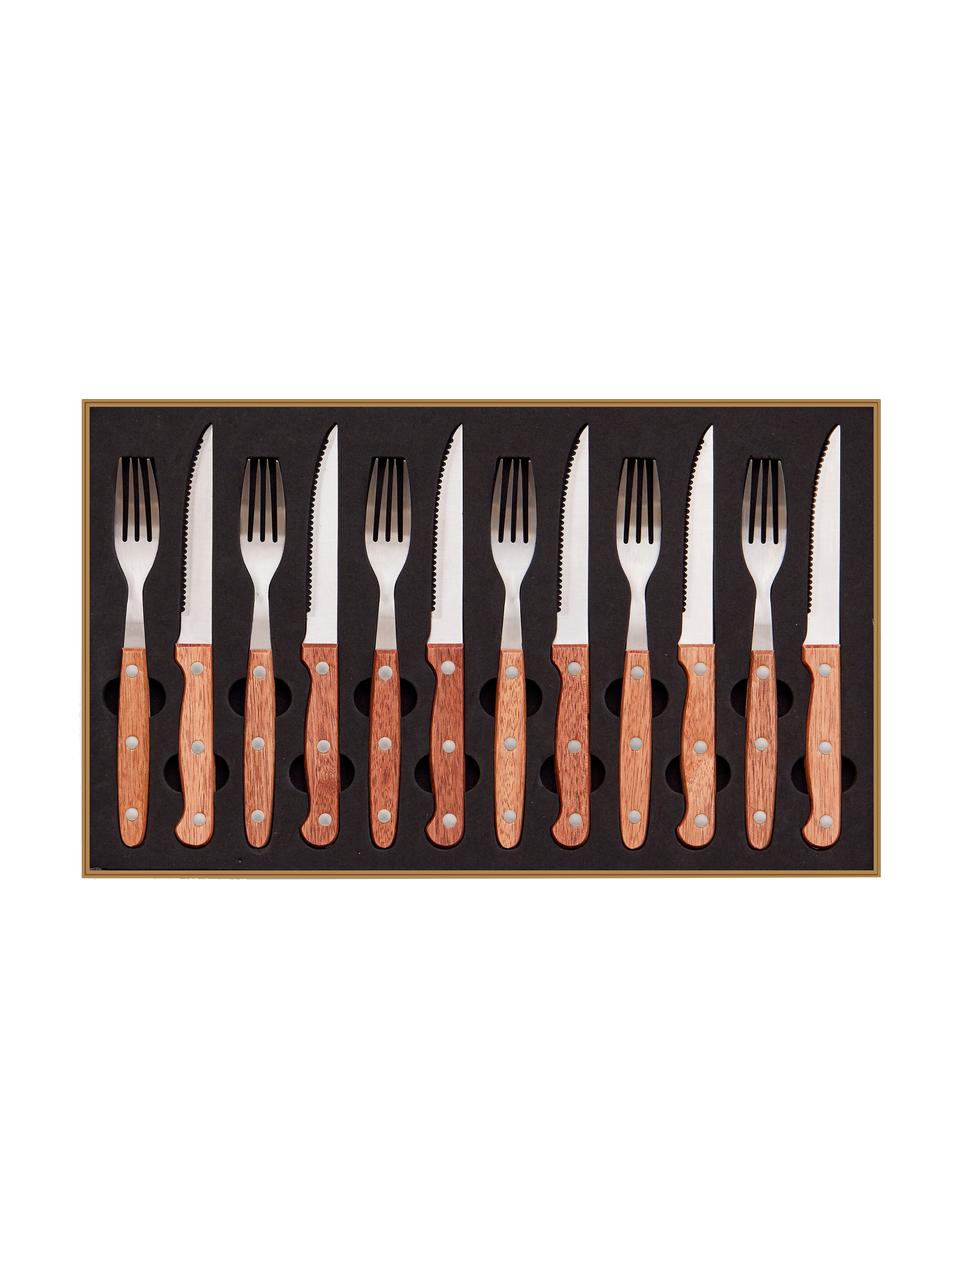 Bestekset Barbecue, 6 personen (12-delig), Bestek: edelstaal, Bruin, L 22 cm